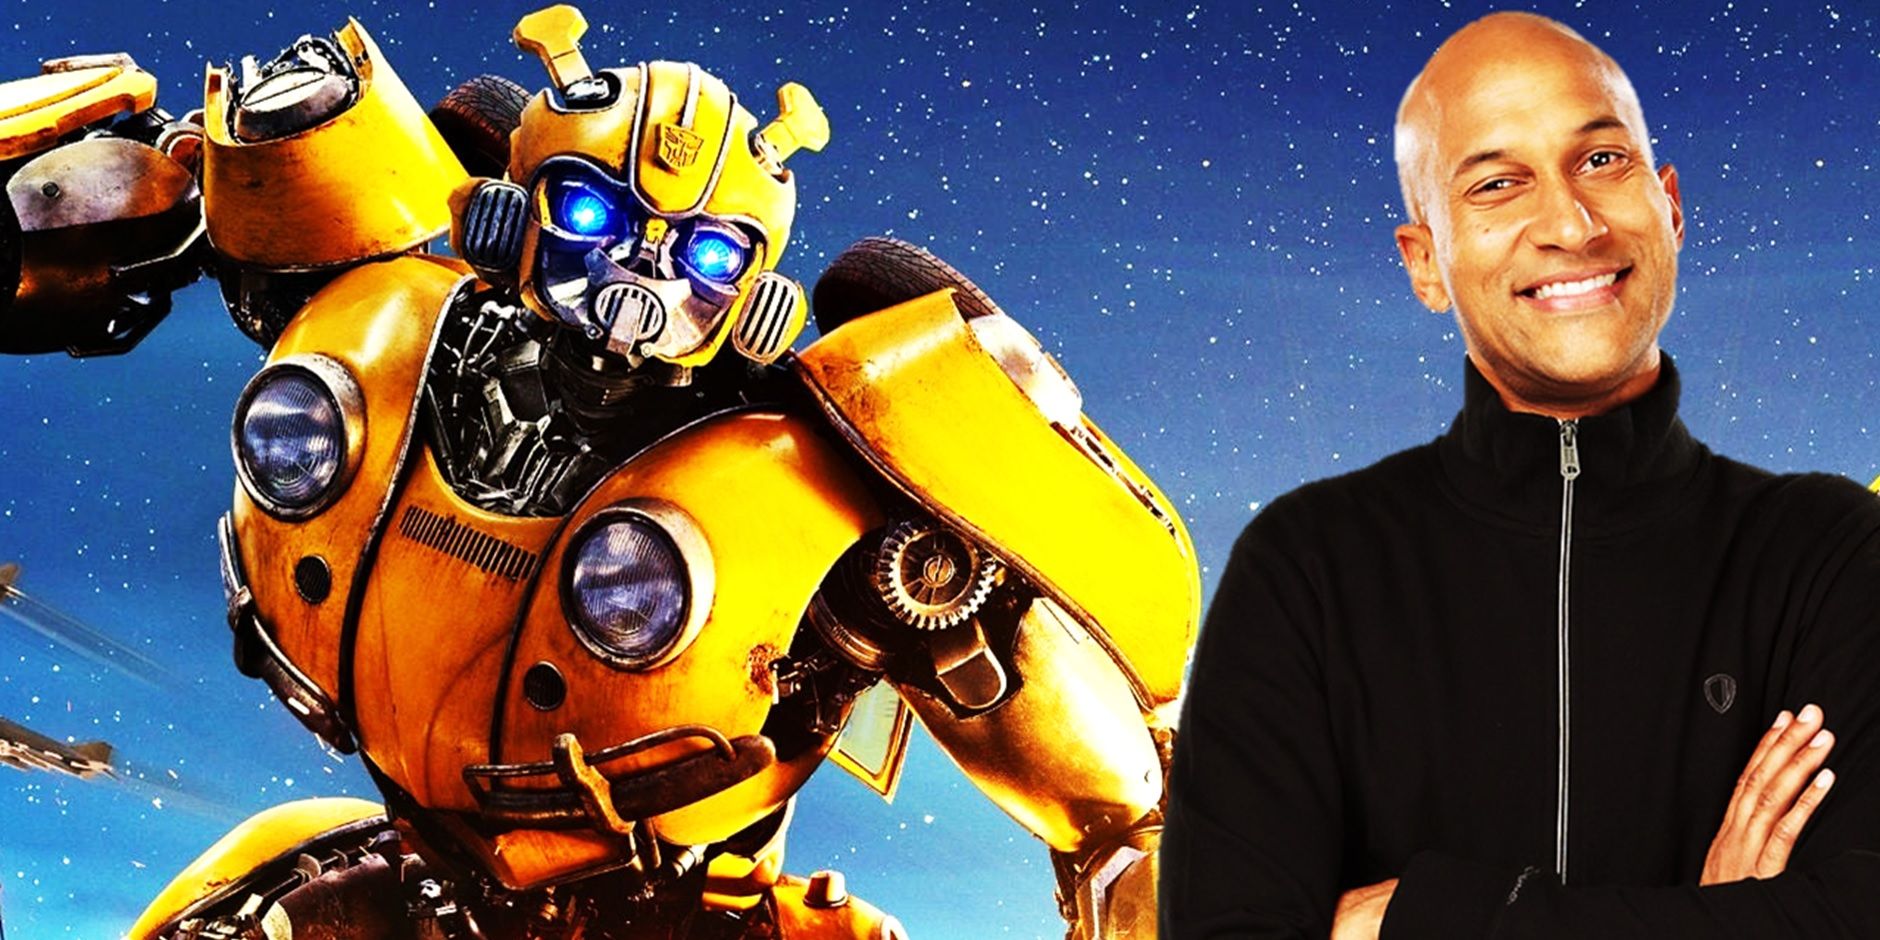 La refundición de Bumblebee continúa un error de la película Transformers